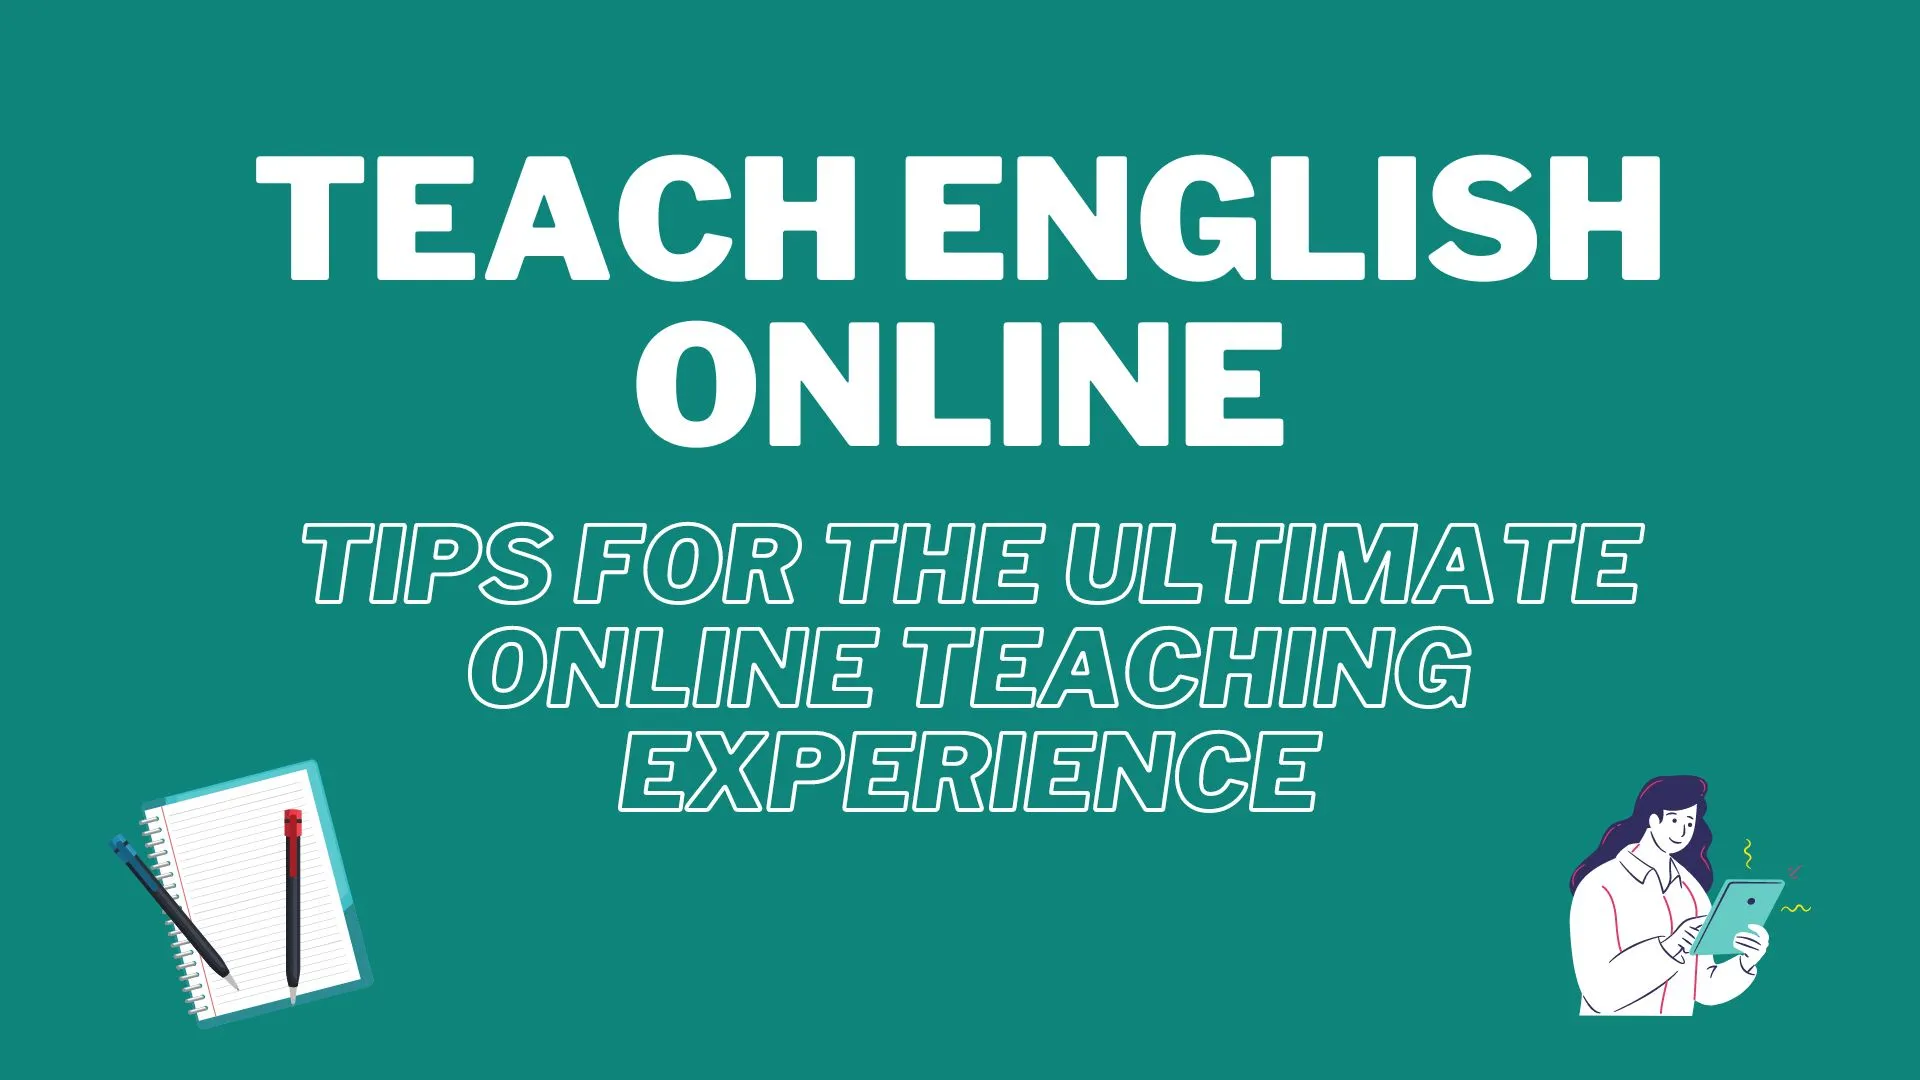 Porady, jak skutecznie uczyć angielskiego online.